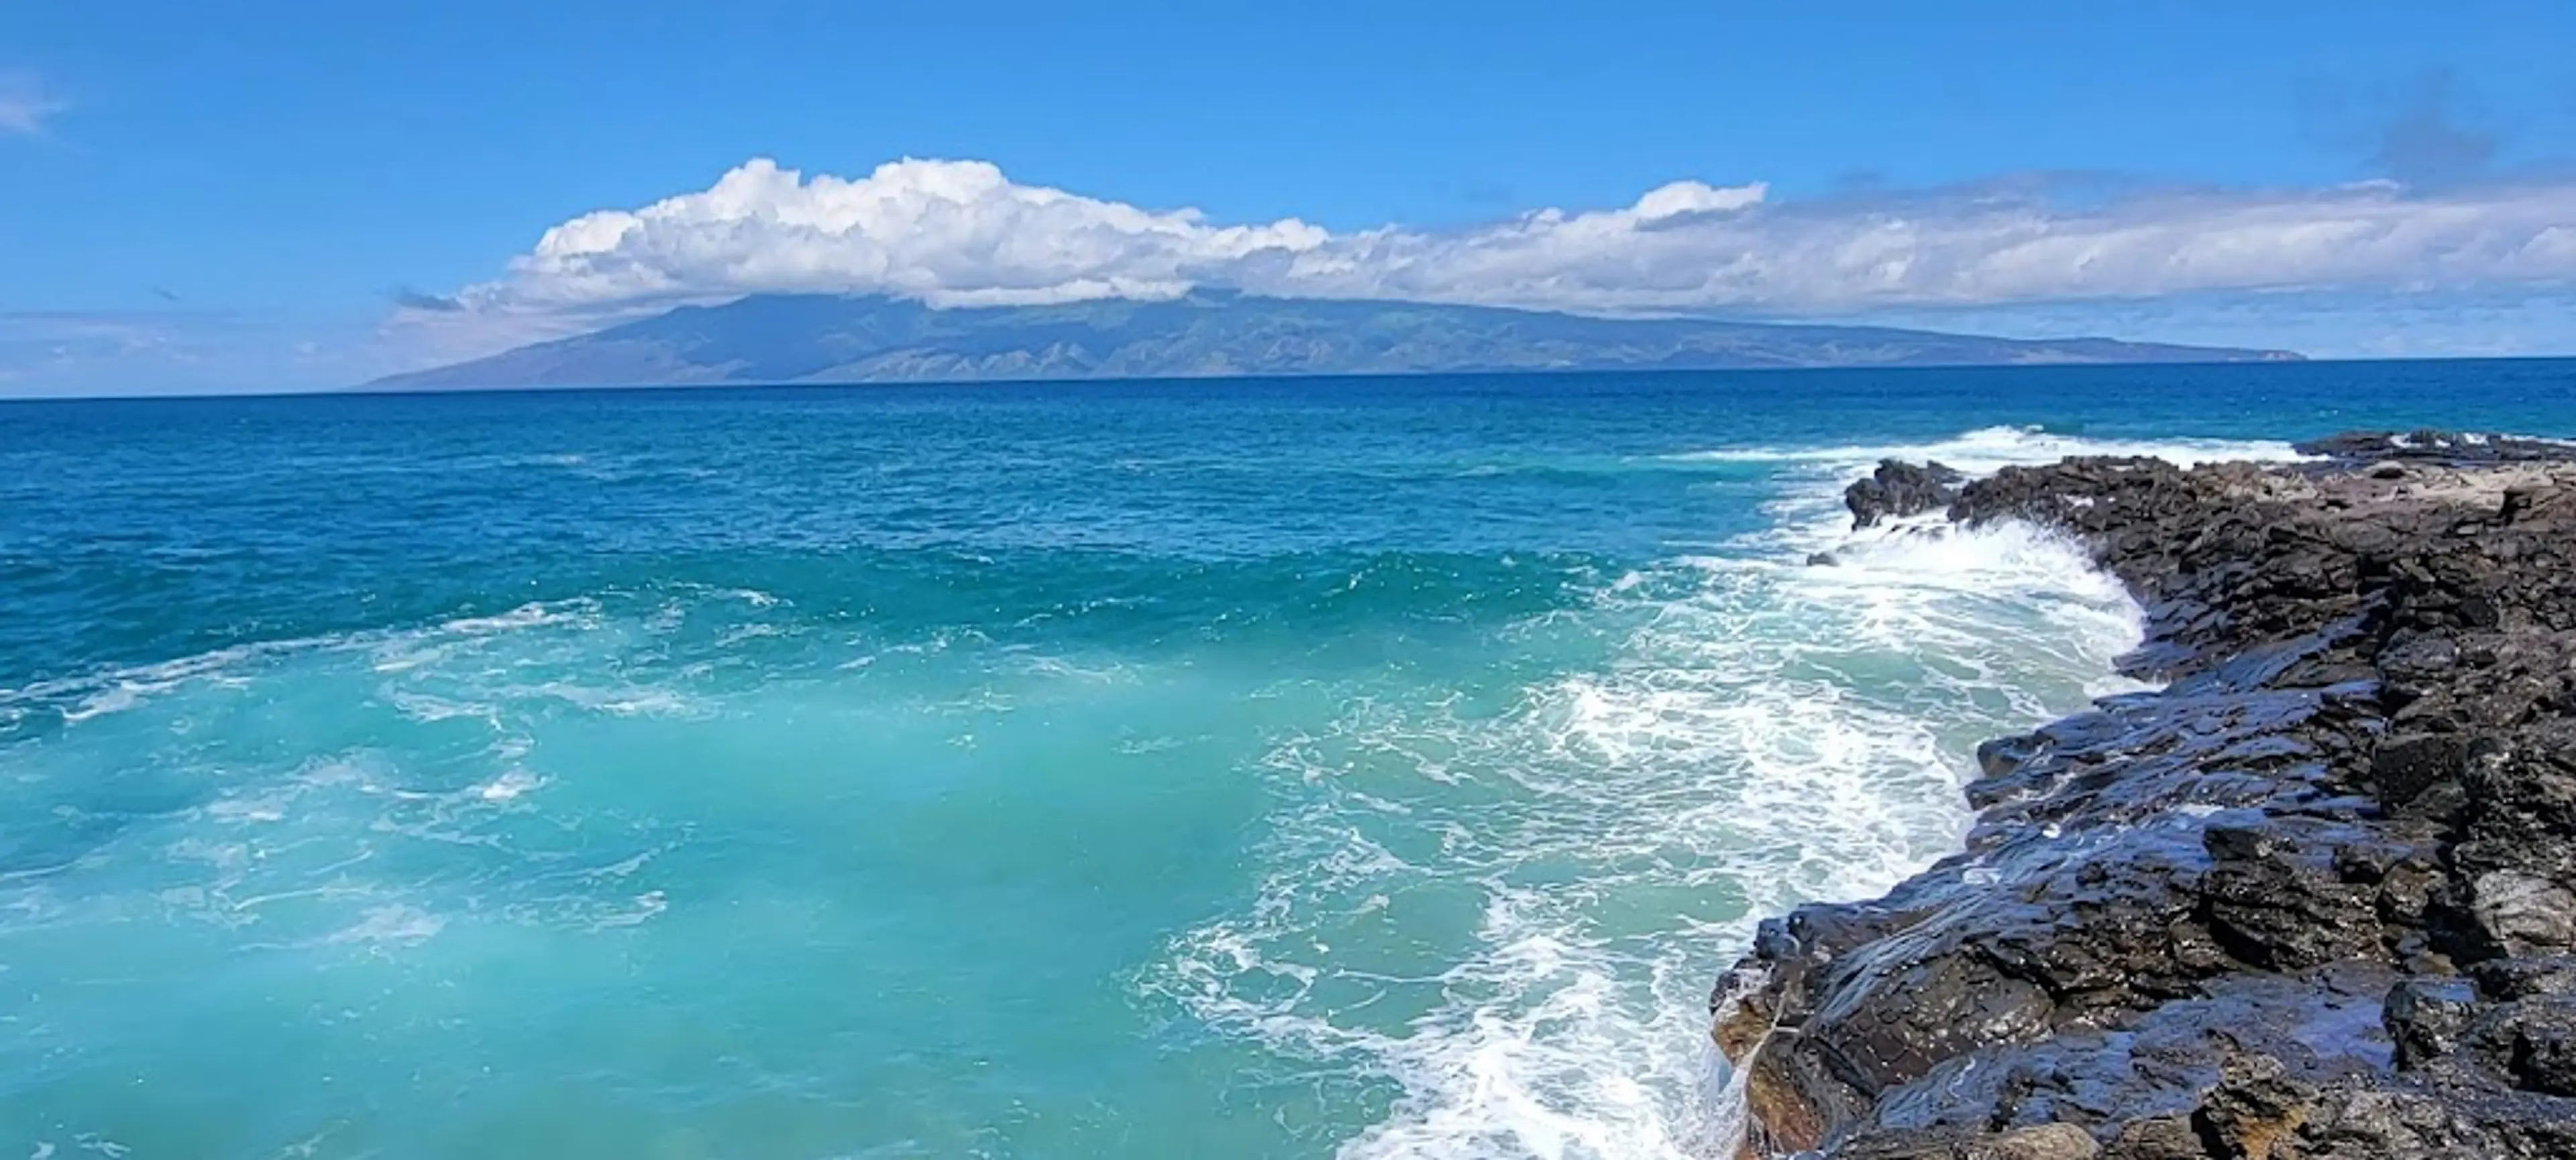 West Maui coastline